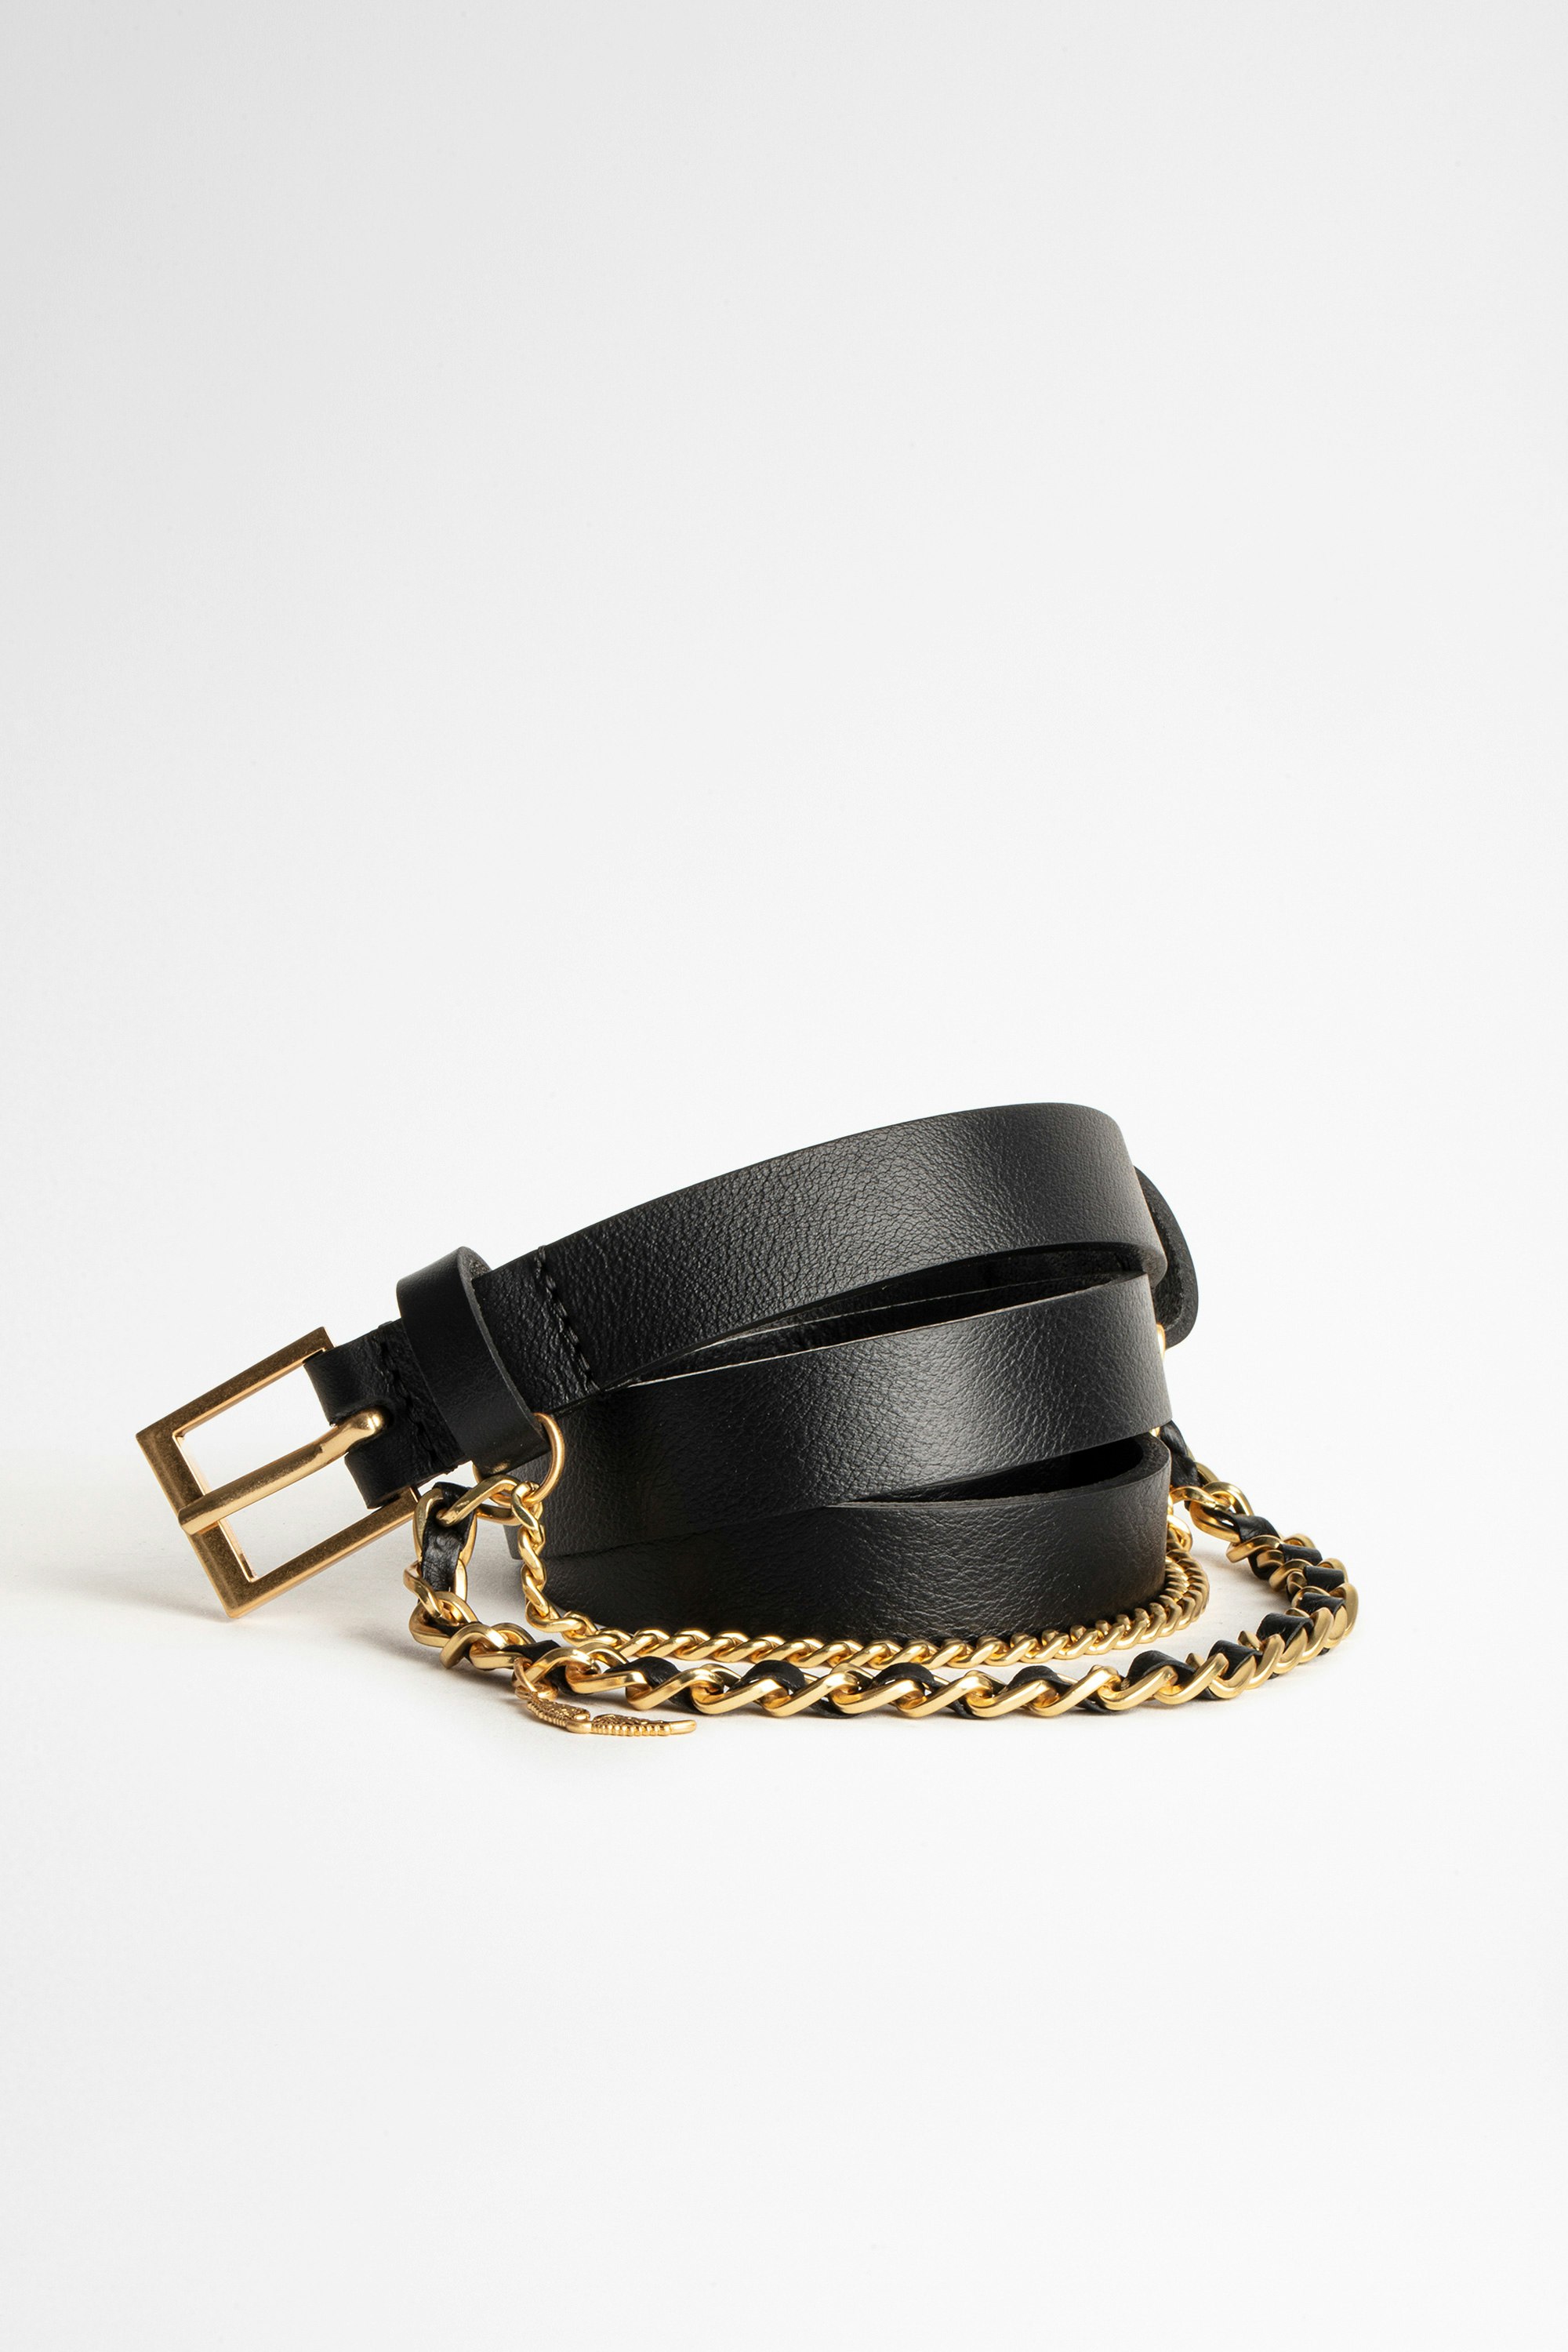 Cintura Rock Chain Cintura in pelle nera da donna Zadig&Voltaire con catena dorata.